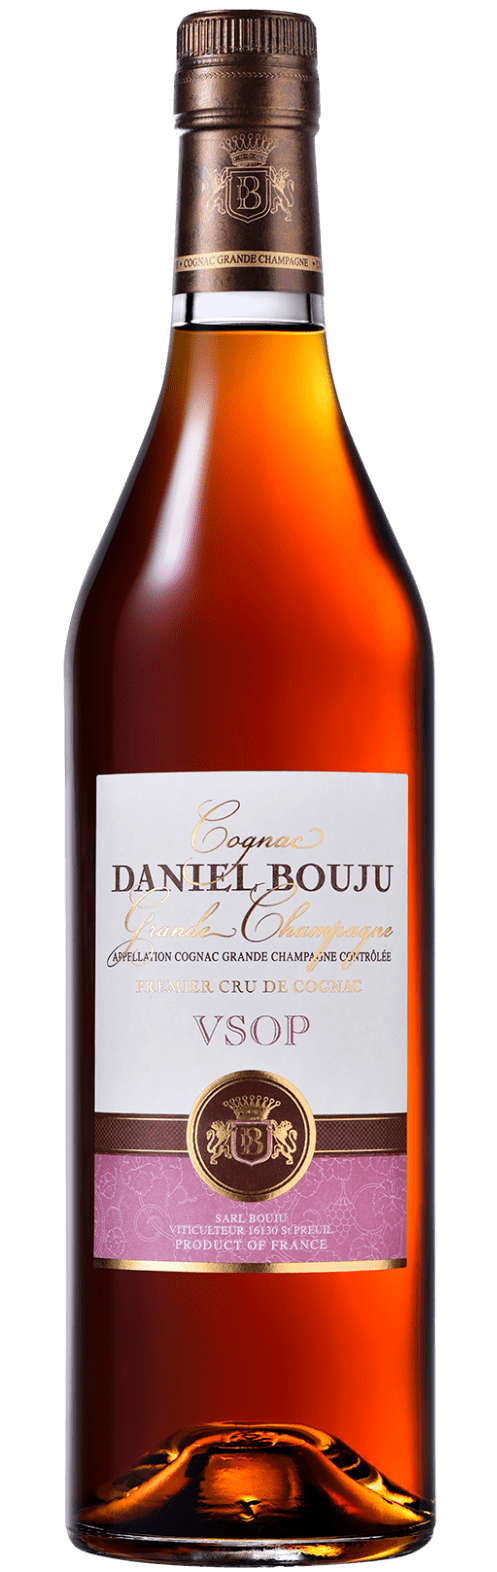 V.S.O.P. Cognac Grande Champagne A.C.C. Daniel Bouju